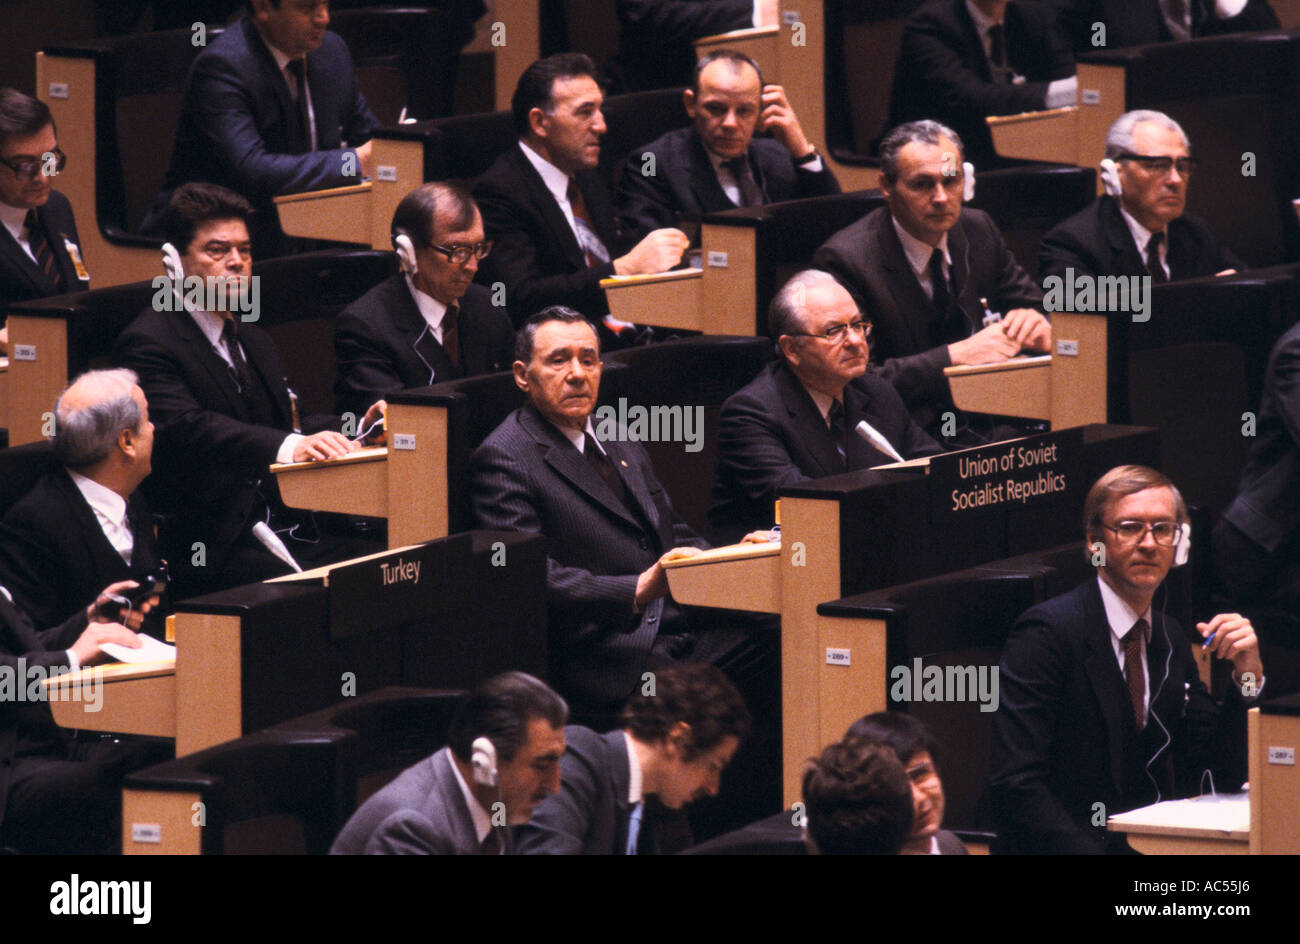 Soviet Delegates at Conference in Stockholm, Sweden, 1984 Stock Photo